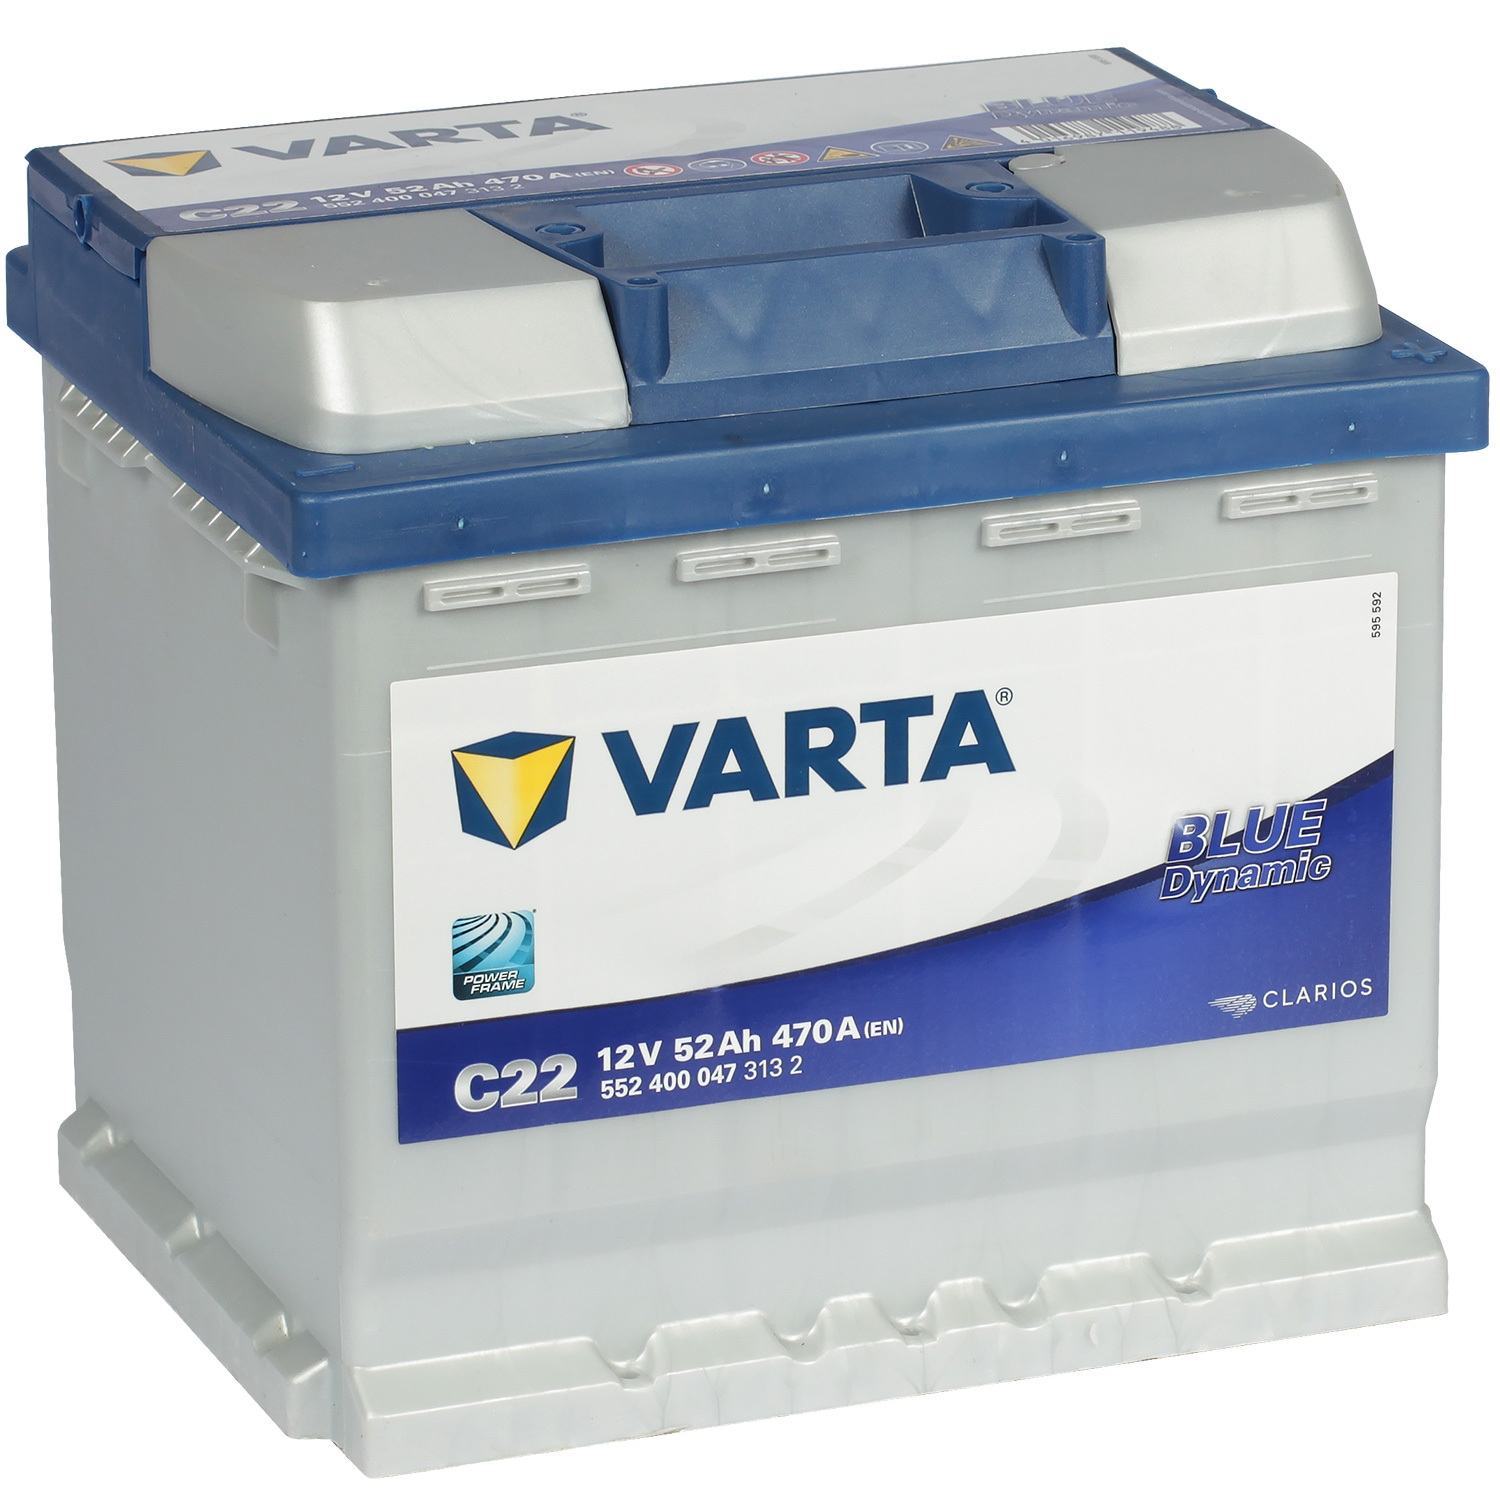 Varta Автомобильный аккумулятор Varta Blue Dynamic C22 52 Ач обратная полярность L1 energizer автомобильный аккумулятор energizer 54 ач обратная полярность l1